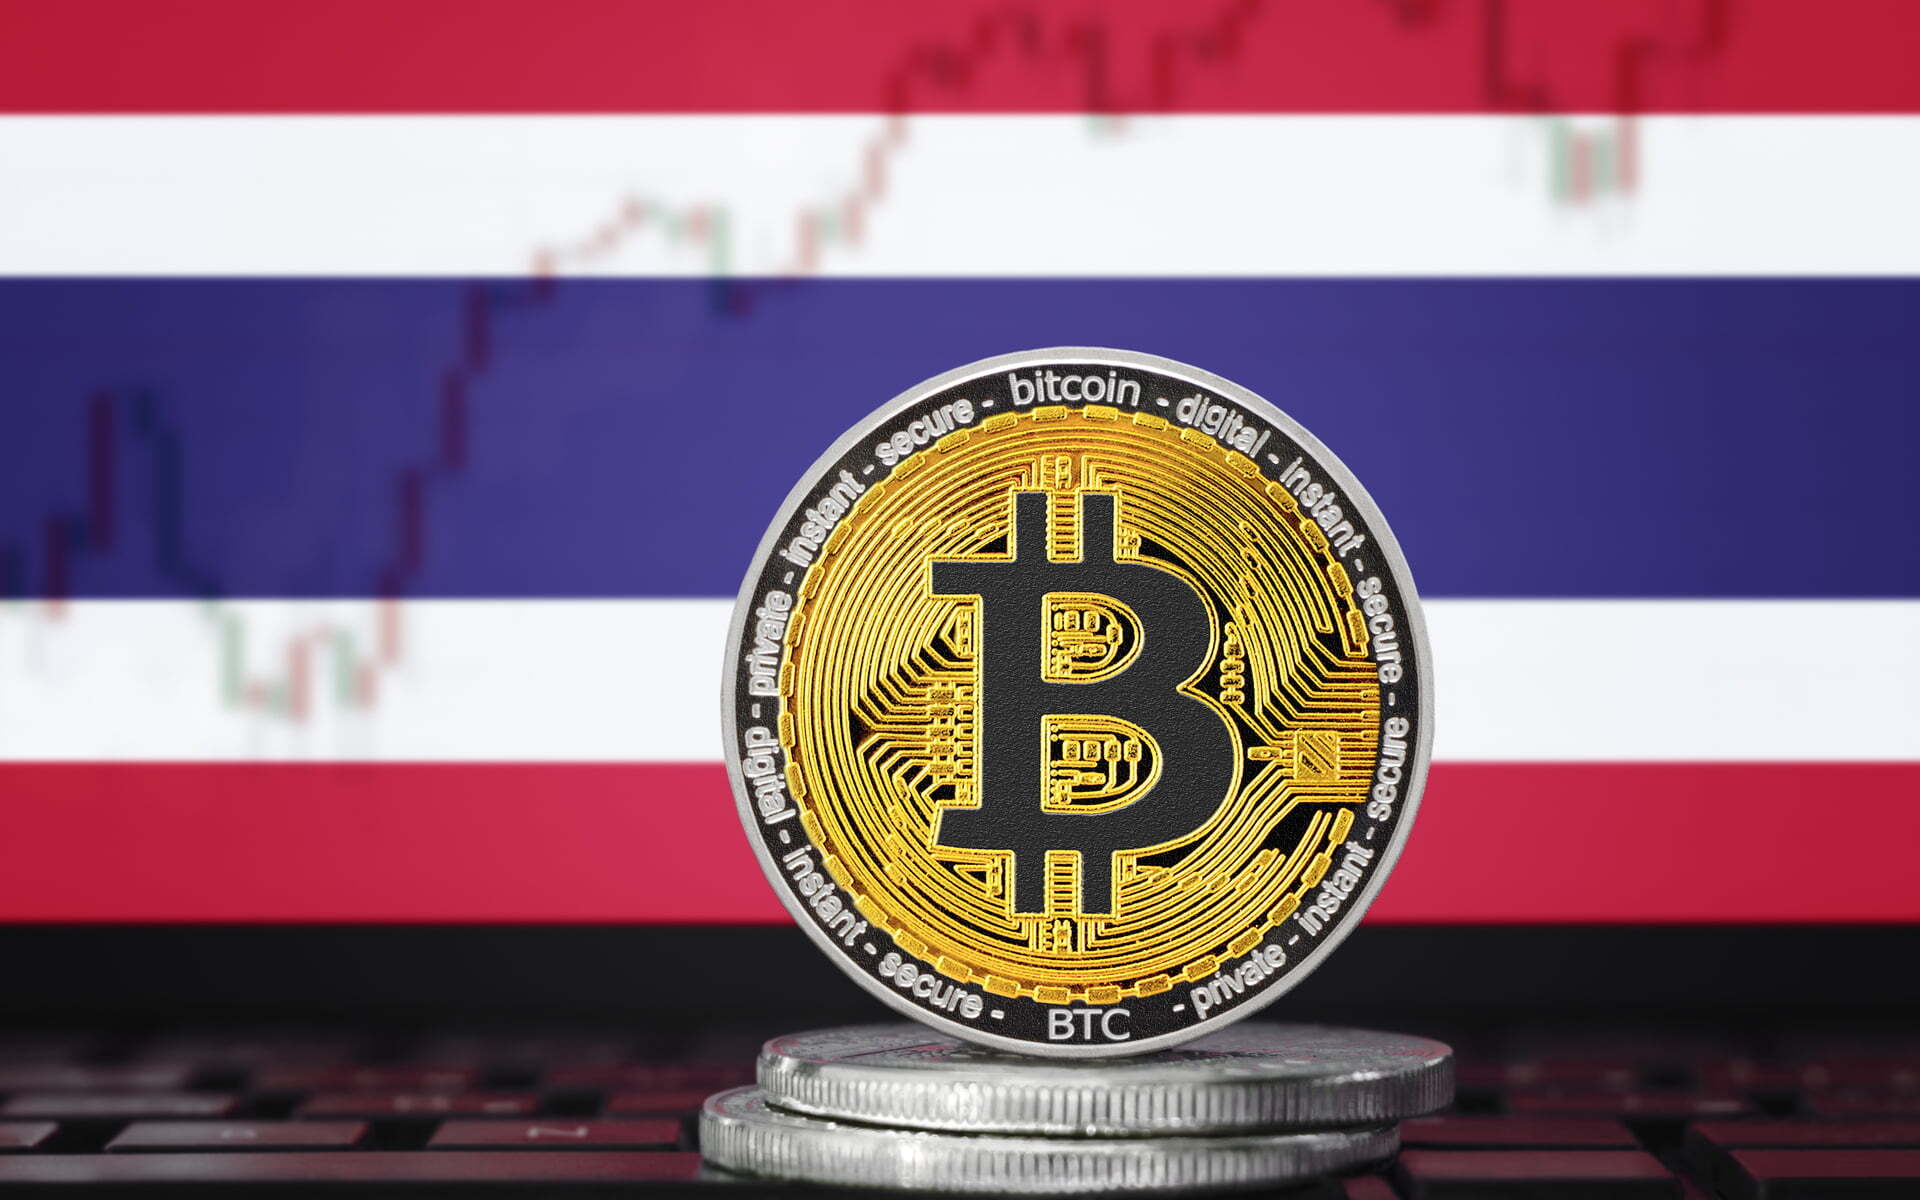 Thái Lan sẽ không cấm sử dụng tiền mã hóa, chỉ đưa ra một số cảnh báo nhất định